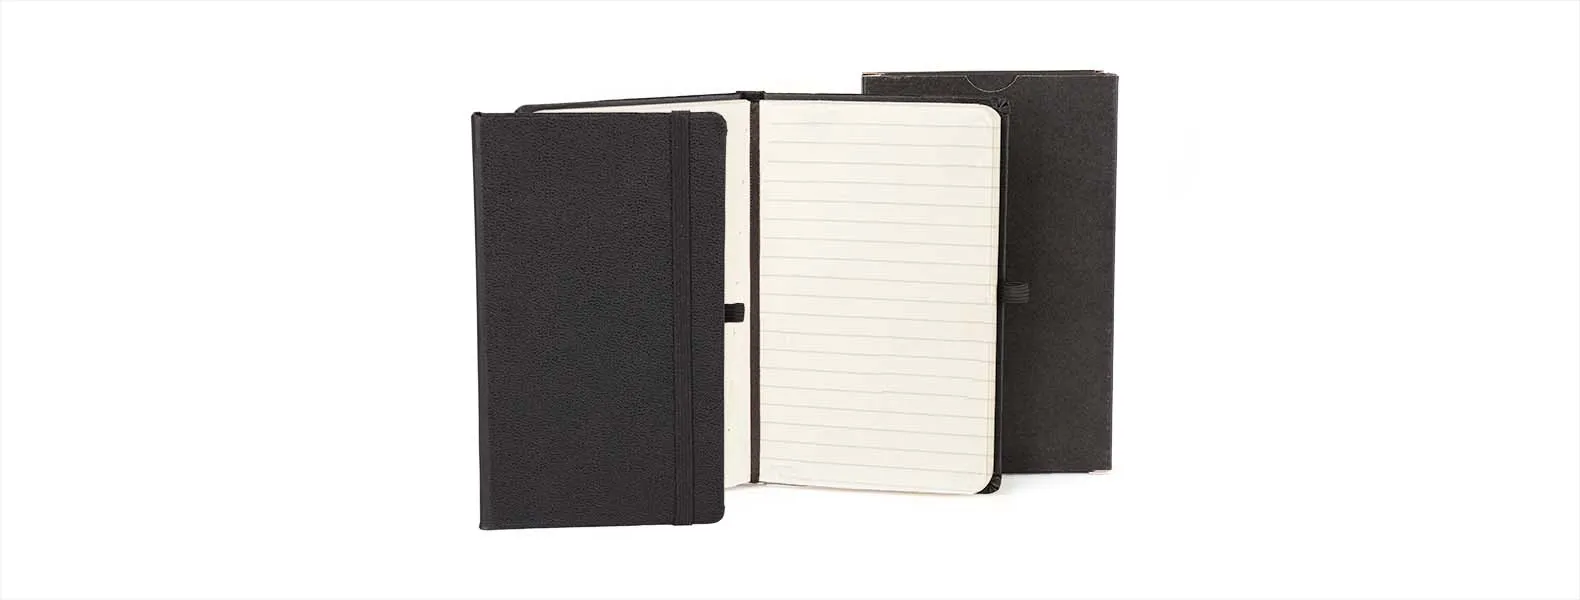 Caderno para anotações preto com capa dura. Conta com 80 folhas pautadas, marcador de página, porta caneta e elástico para fechamento. Gramatura da folha de 70 g/m2.